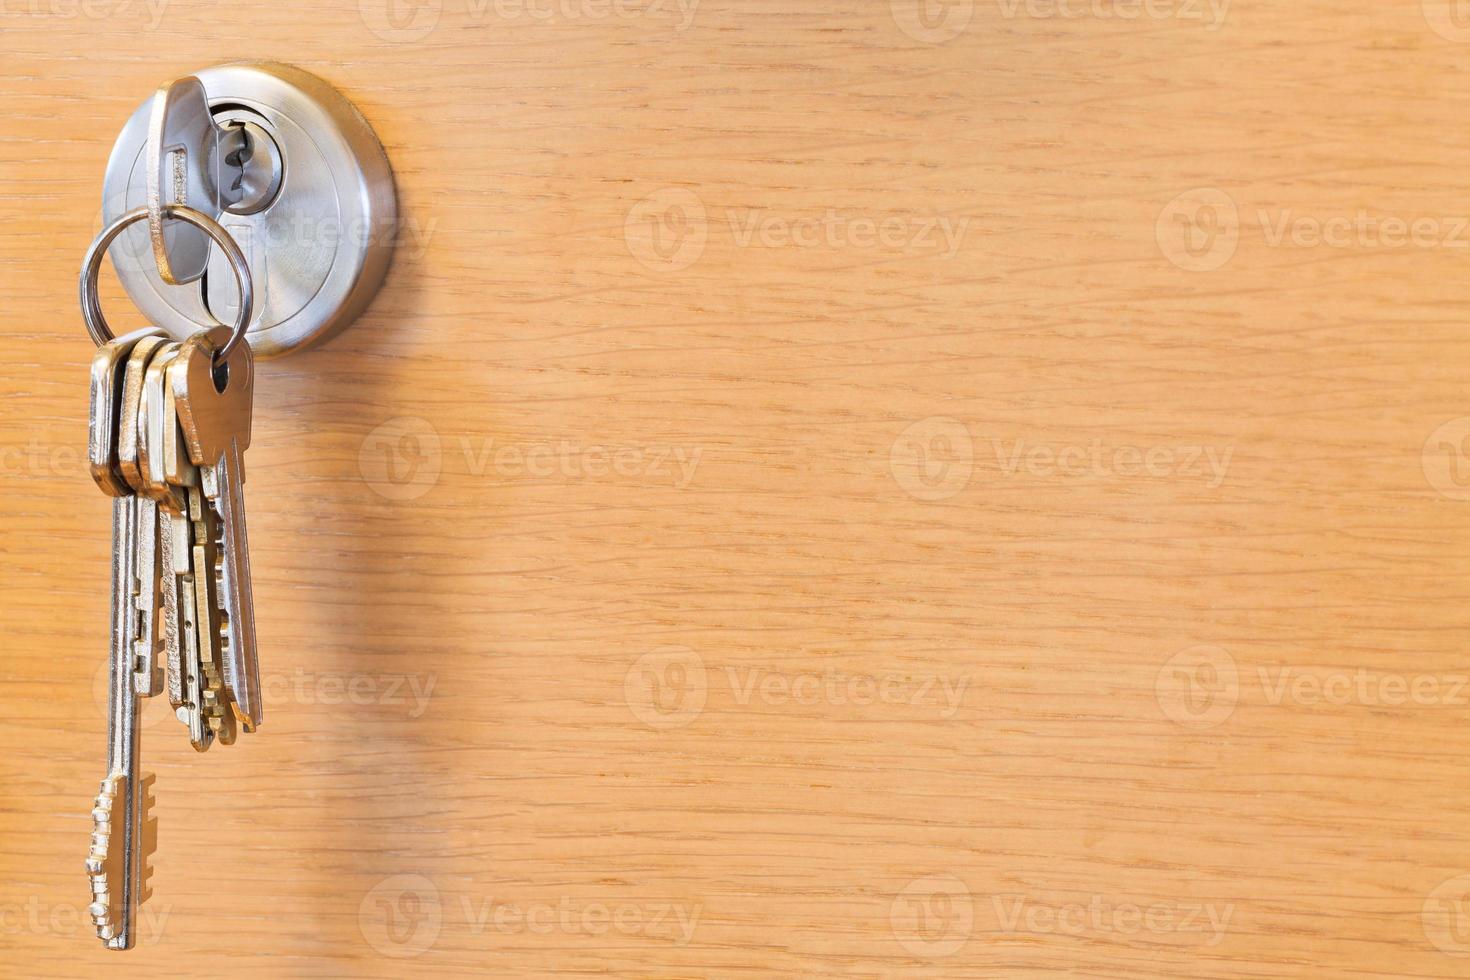 molho de chaves na fechadura da porta de madeira foto